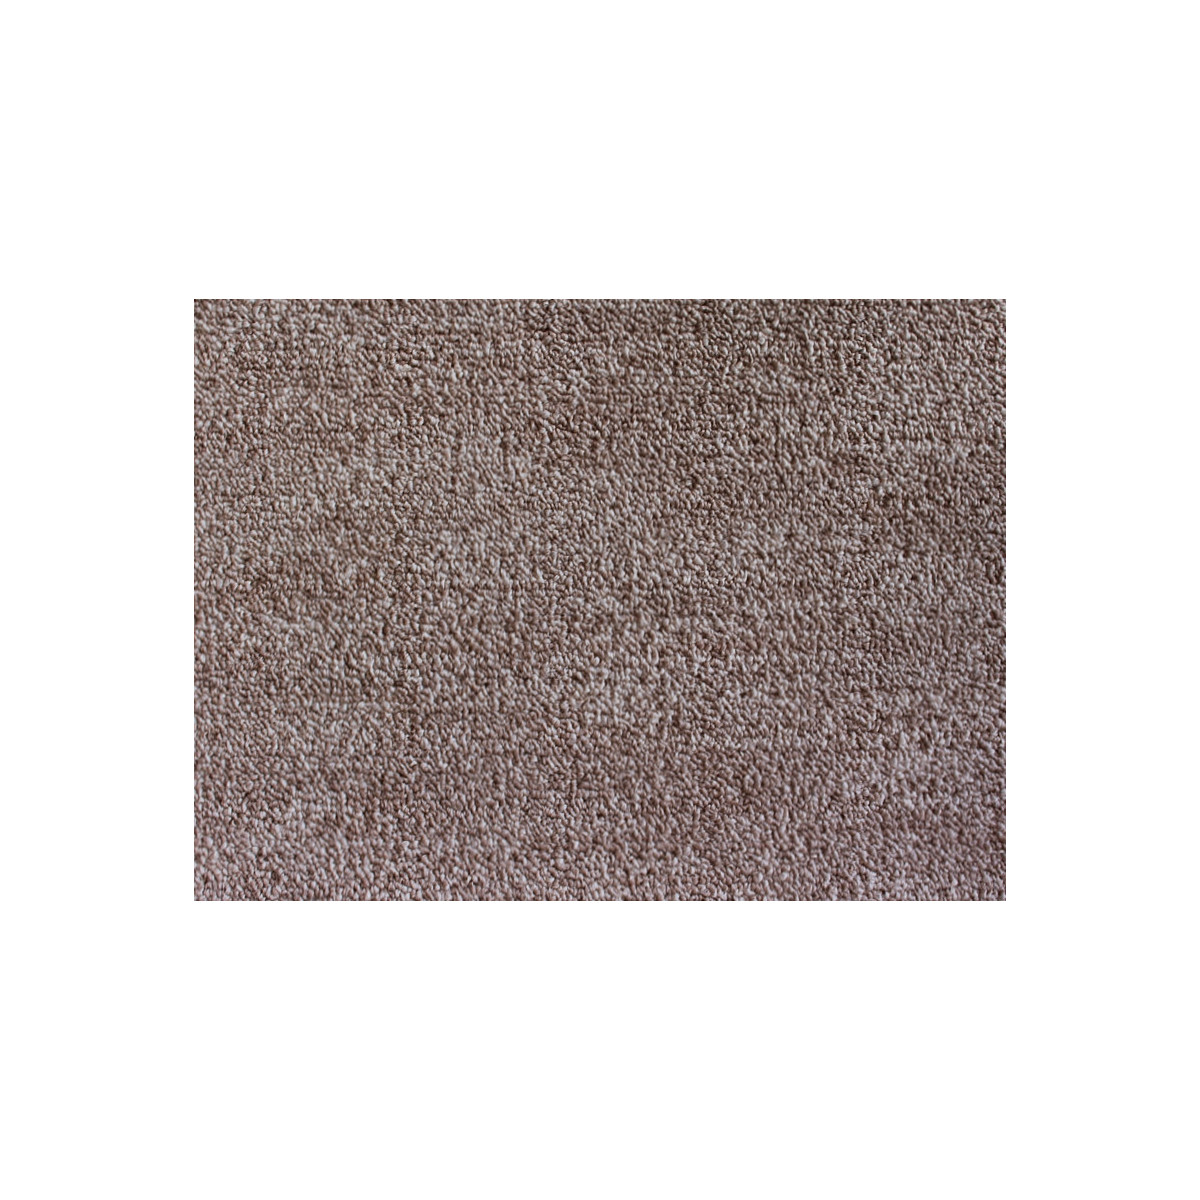 AKCE: 100x150 cm Metrážový koberec Leon 11344 Hnědý